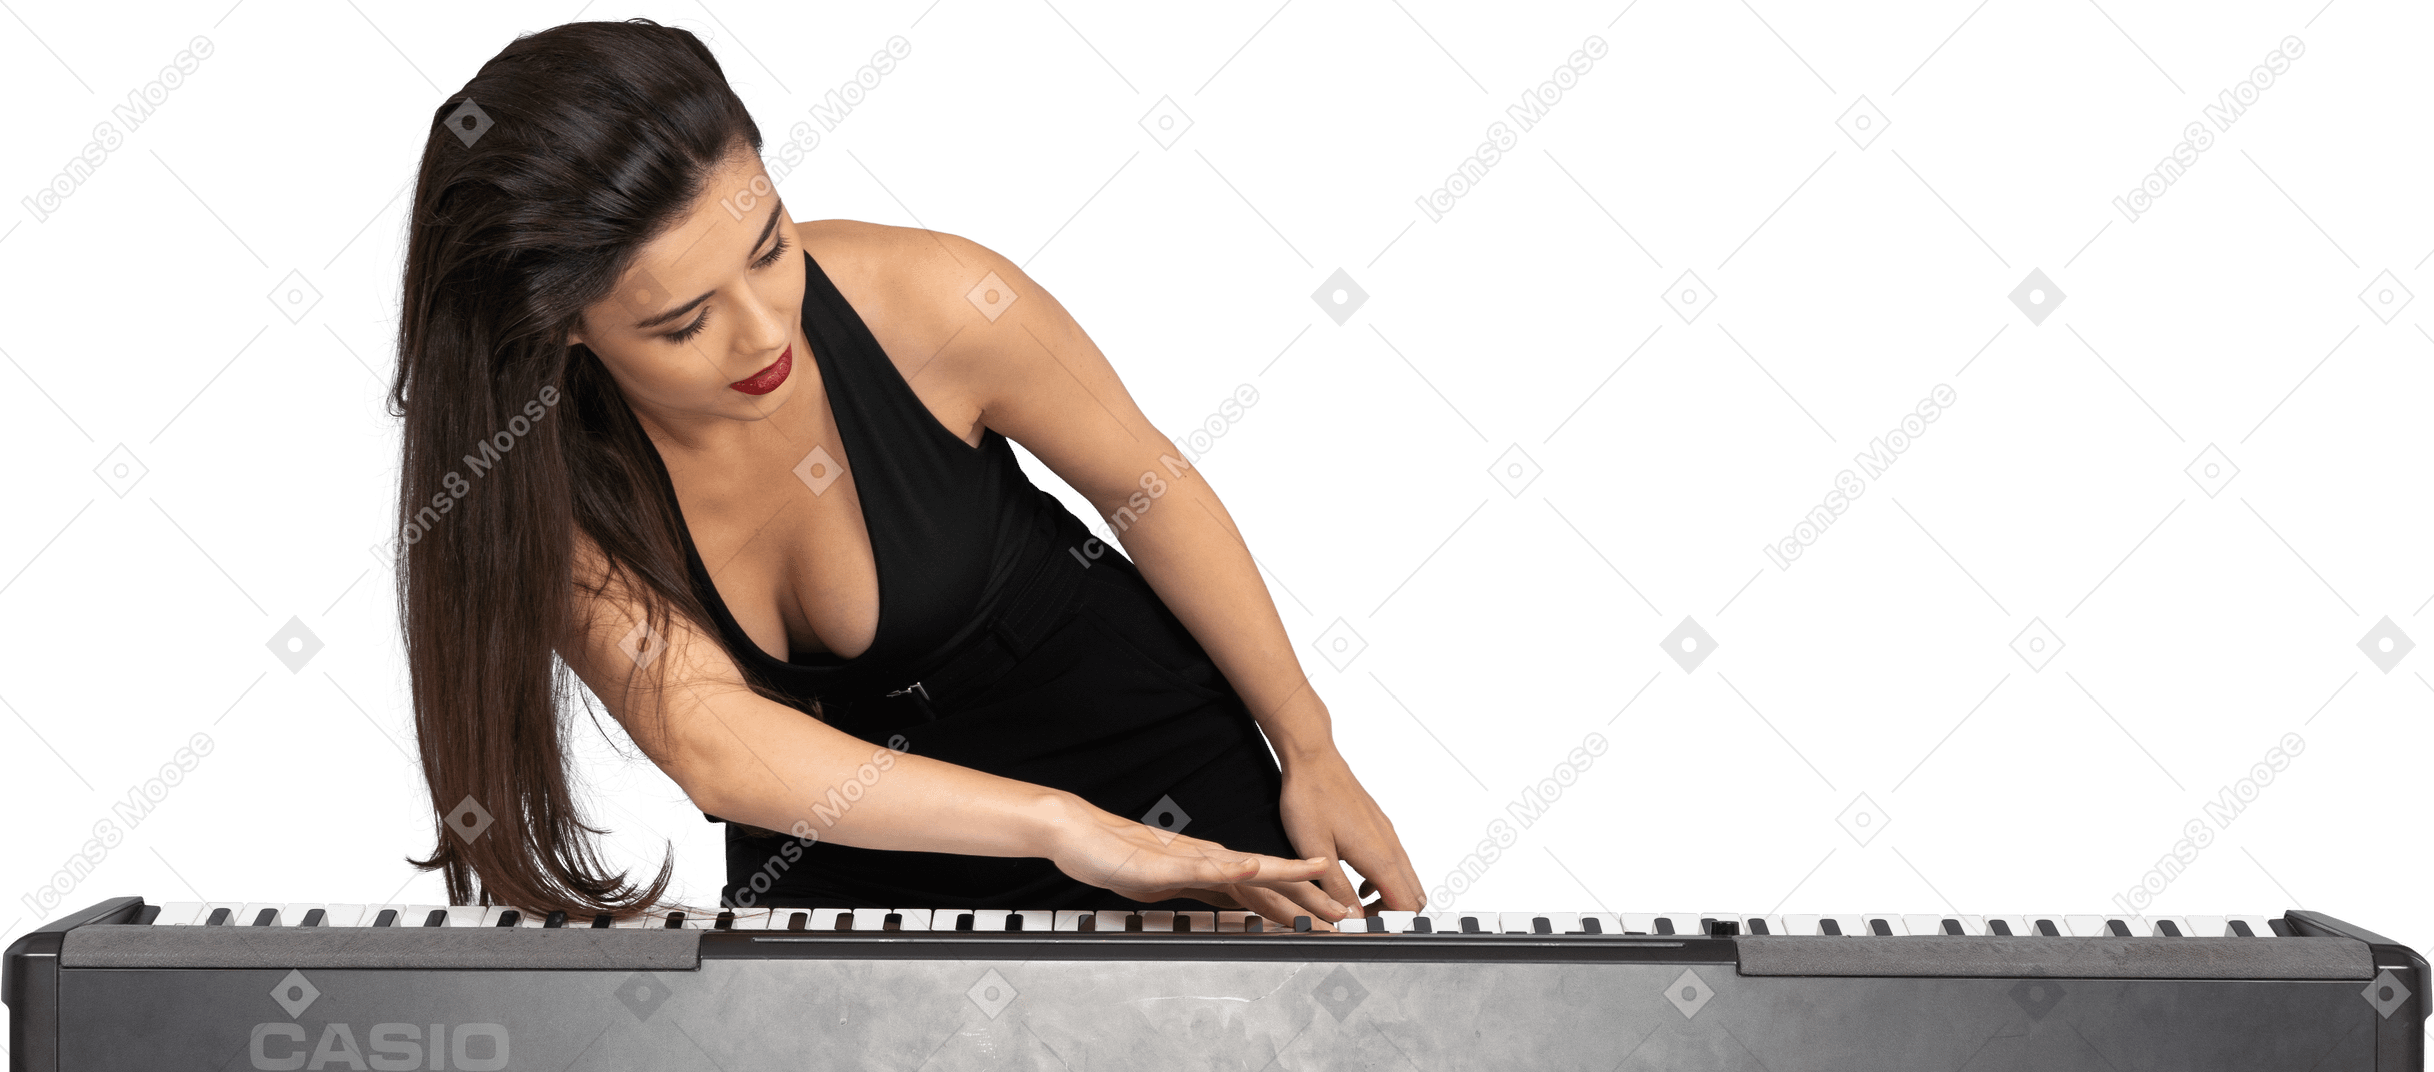 Vista frontal de una señorita vestida de negro poniendo su mano sobre el teclado